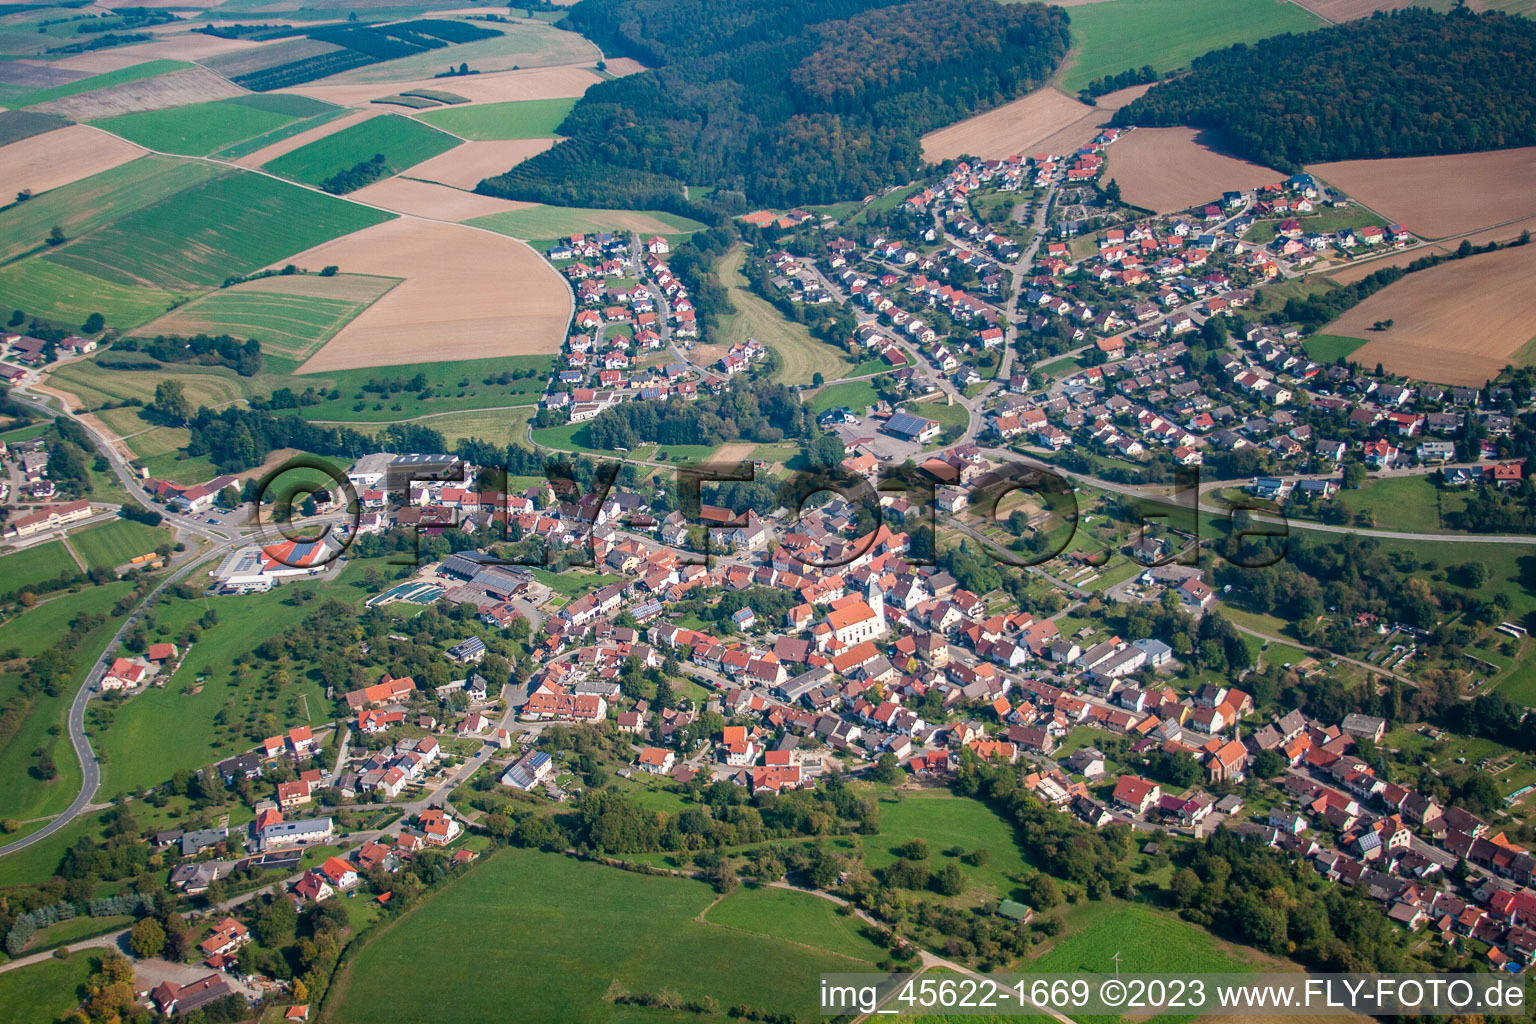 Vue aérienne de Quartier de Sulzbach à Billigheim dans le département Bade-Wurtemberg, Allemagne